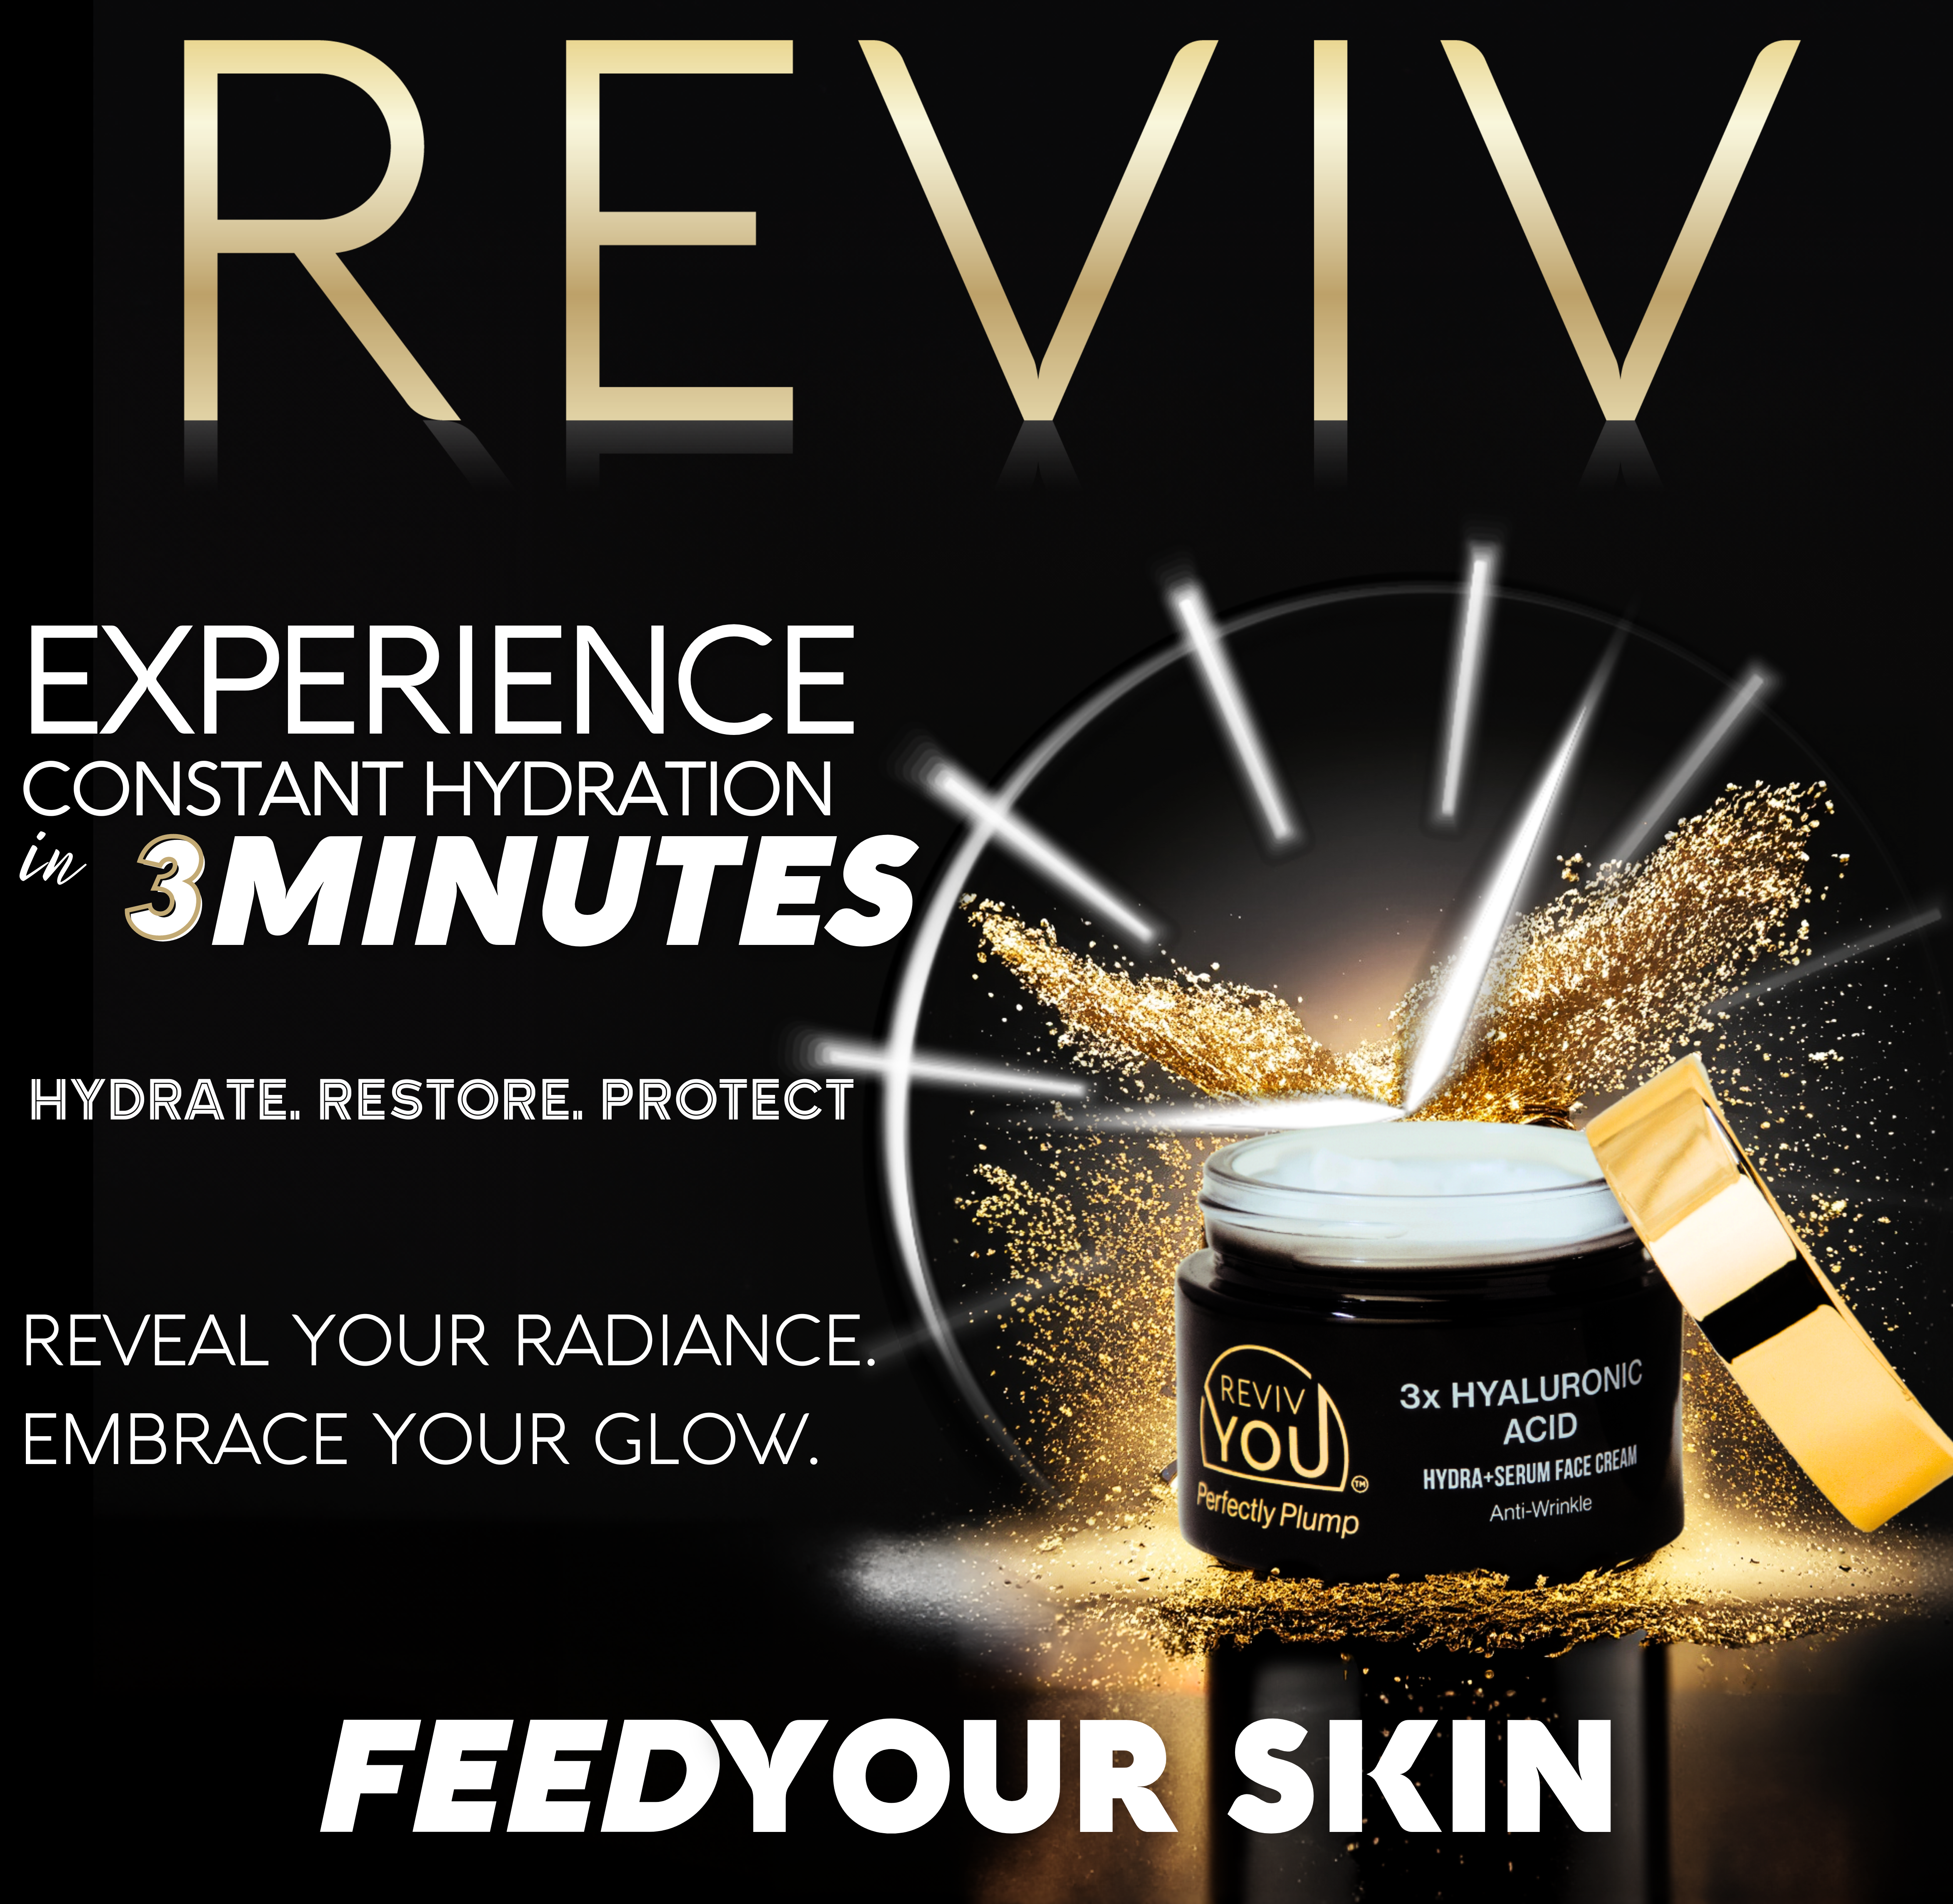 REVIV You Hydra+Serum Face Cream - Unscented 1.7 oz.